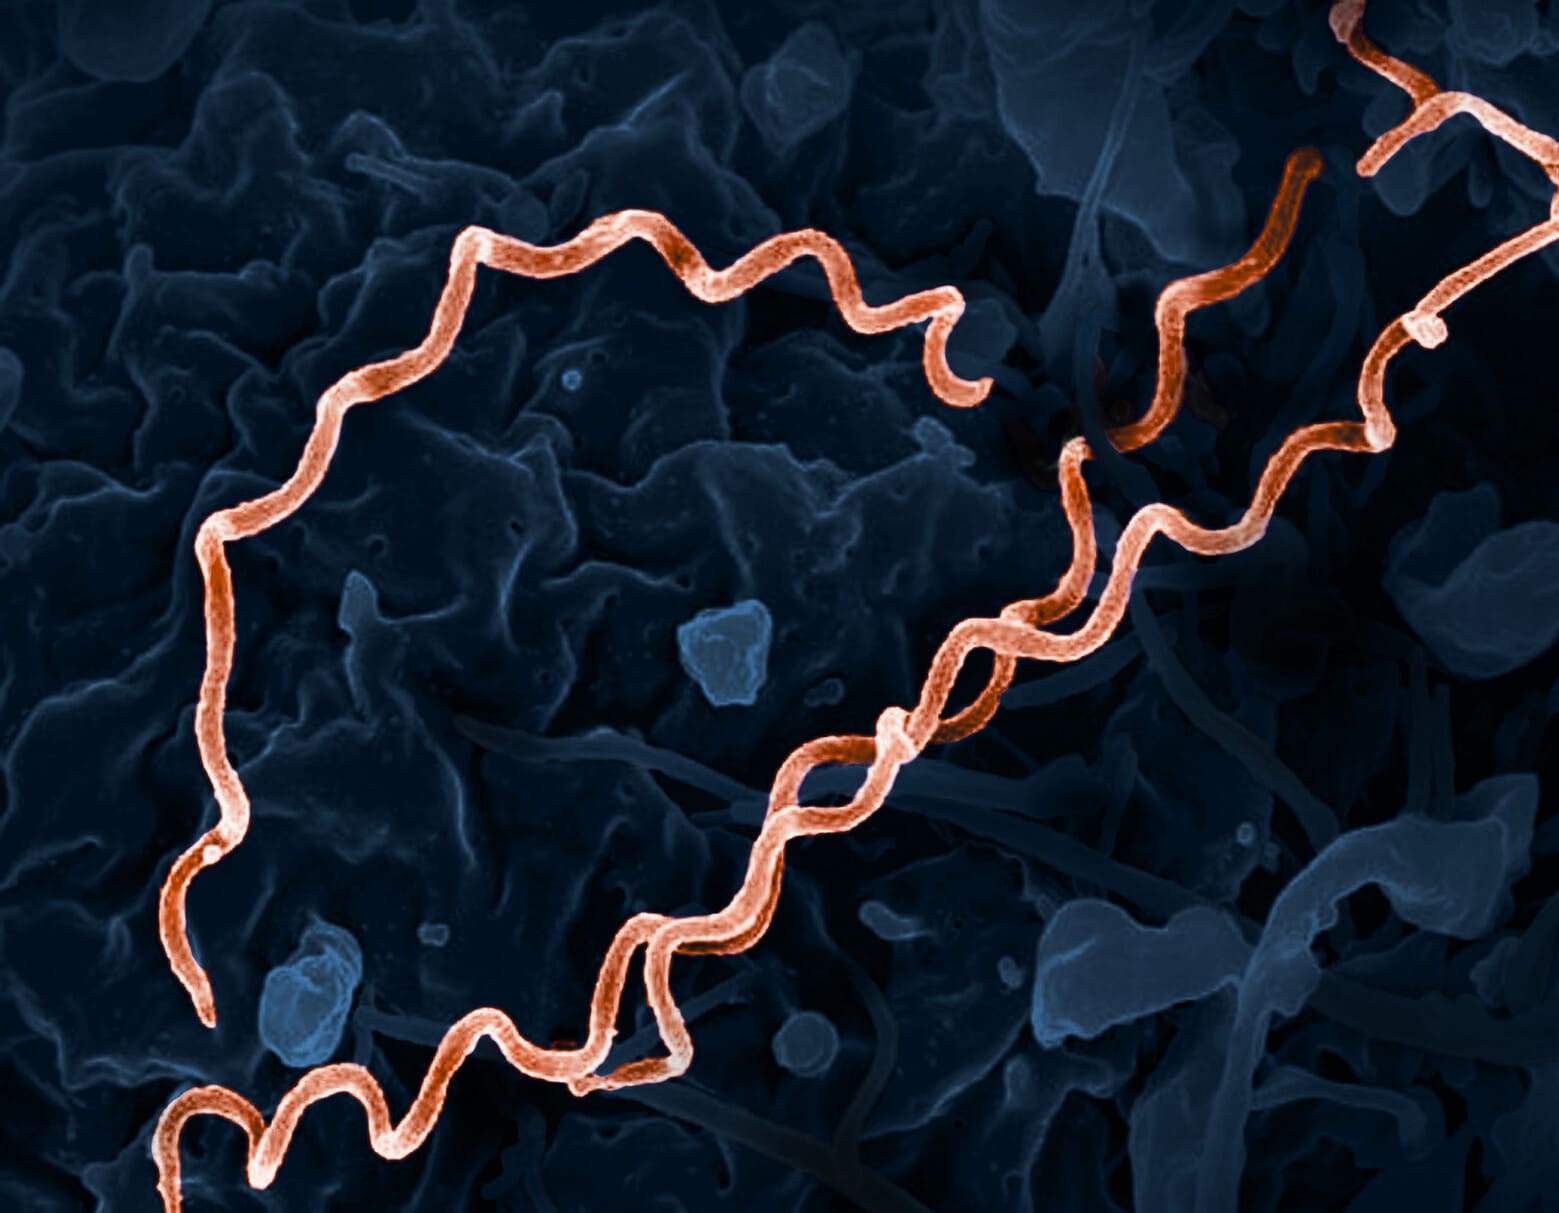 Микробиологи пересматривают происхождение сифилиса в Европе: Колумб не виноват